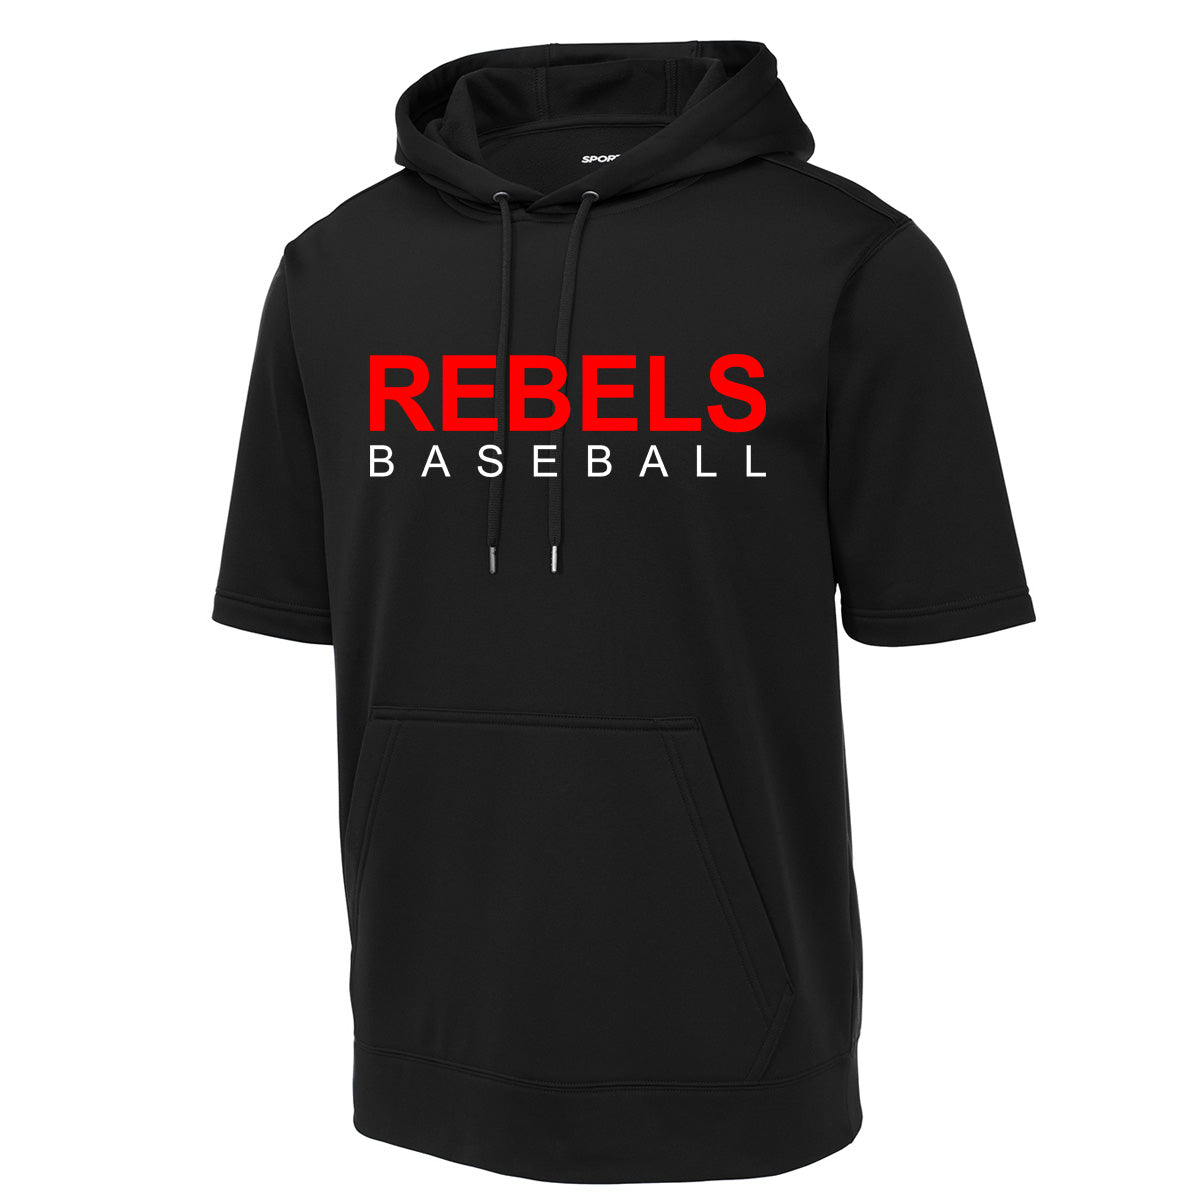 John Hancock - Rebels Baseball 3 -Fleece Short Sleeve Hooded Pullover - Black - Southern Grace Creations